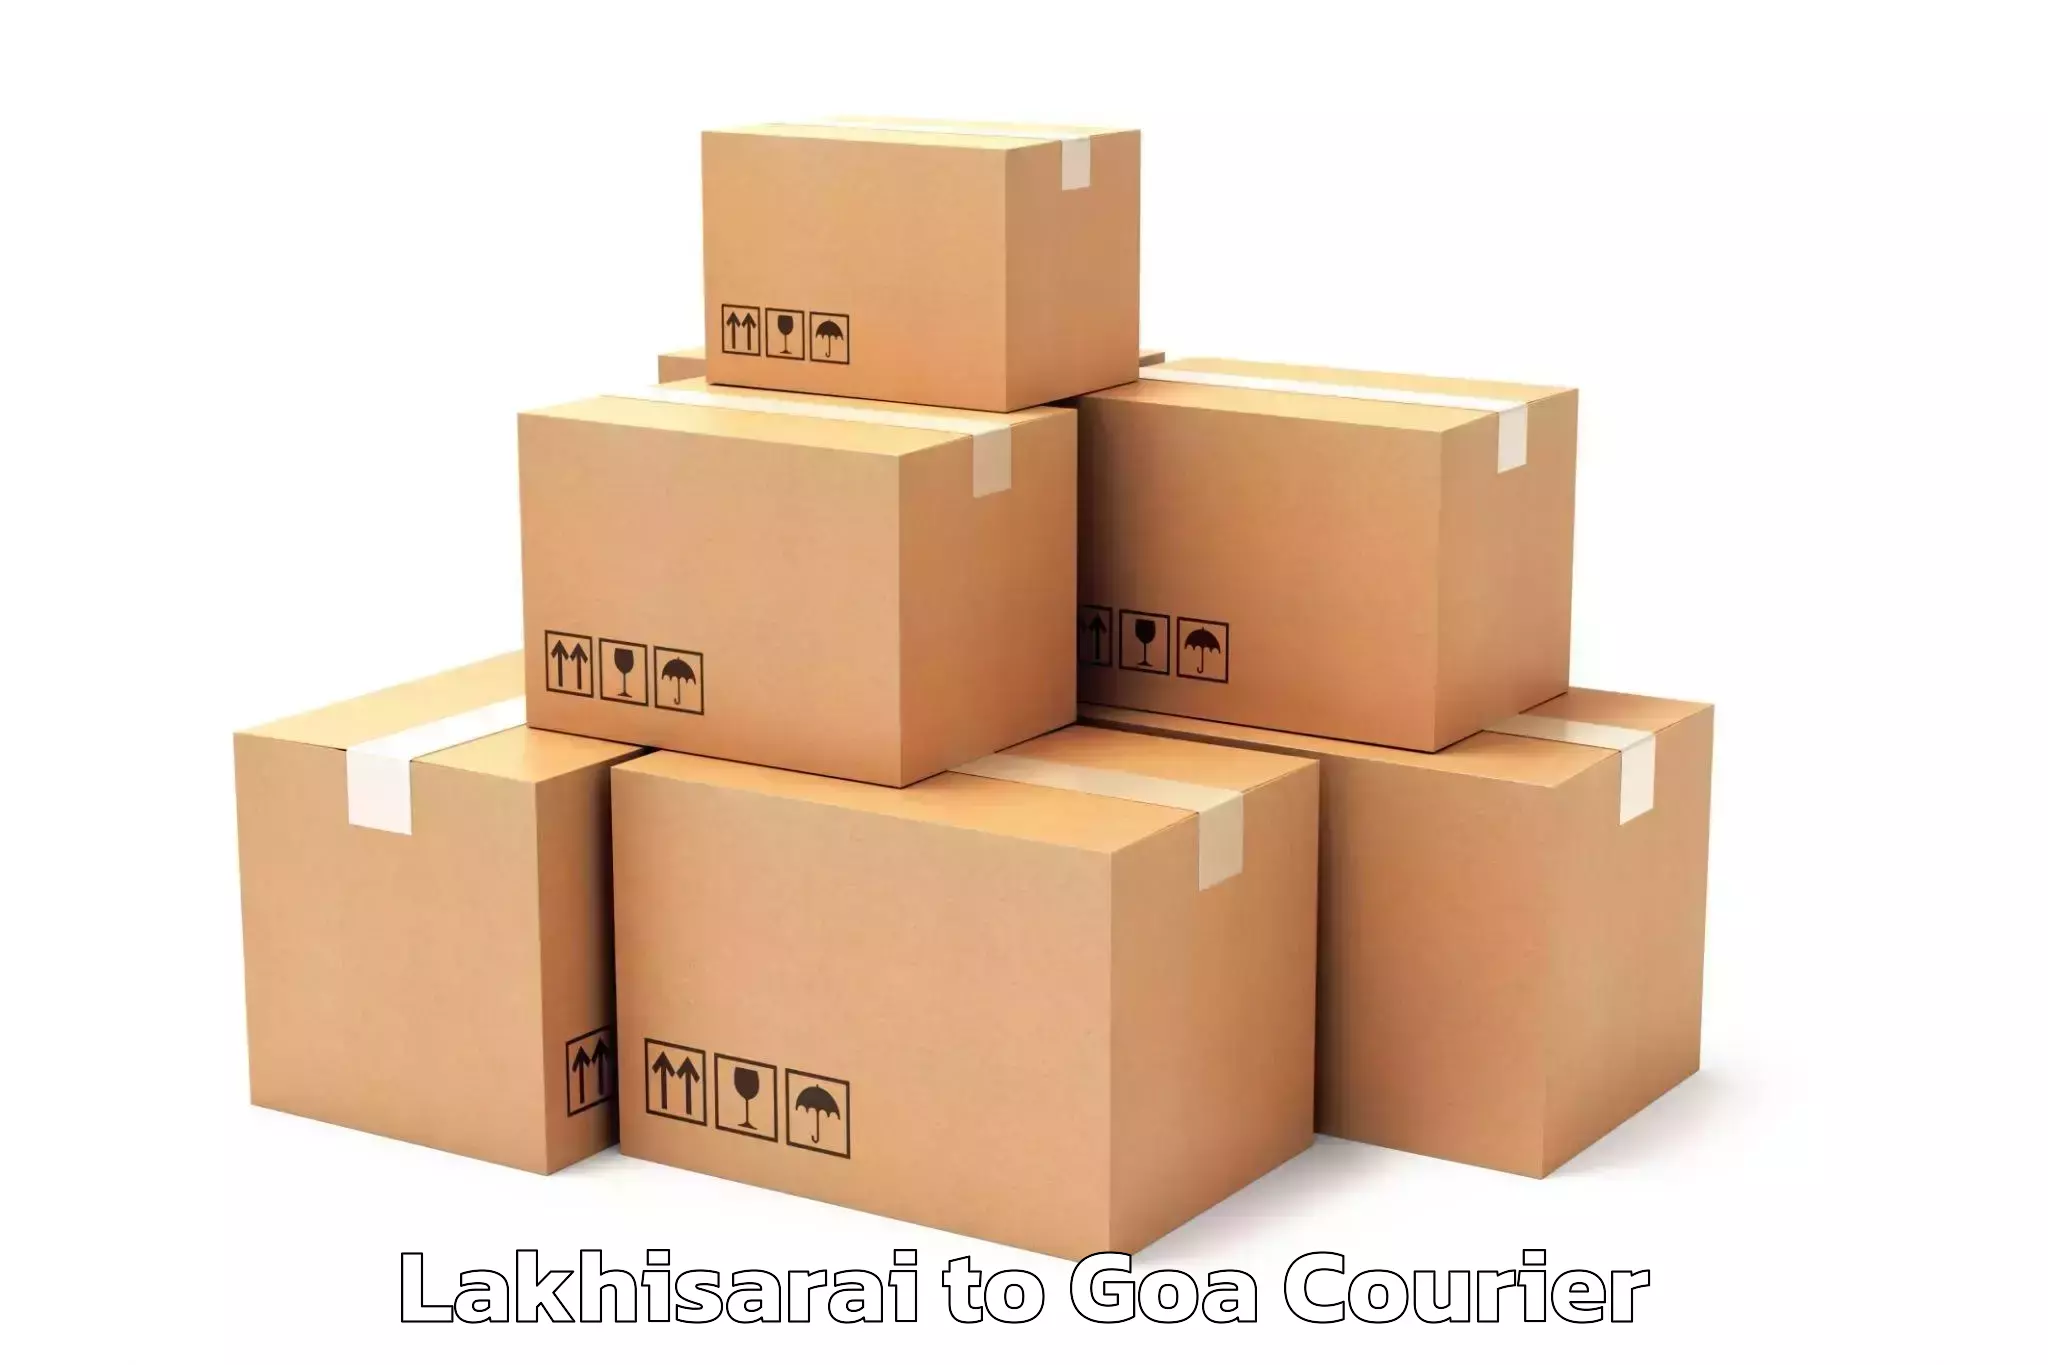 Furniture delivery service Lakhisarai to Goa University